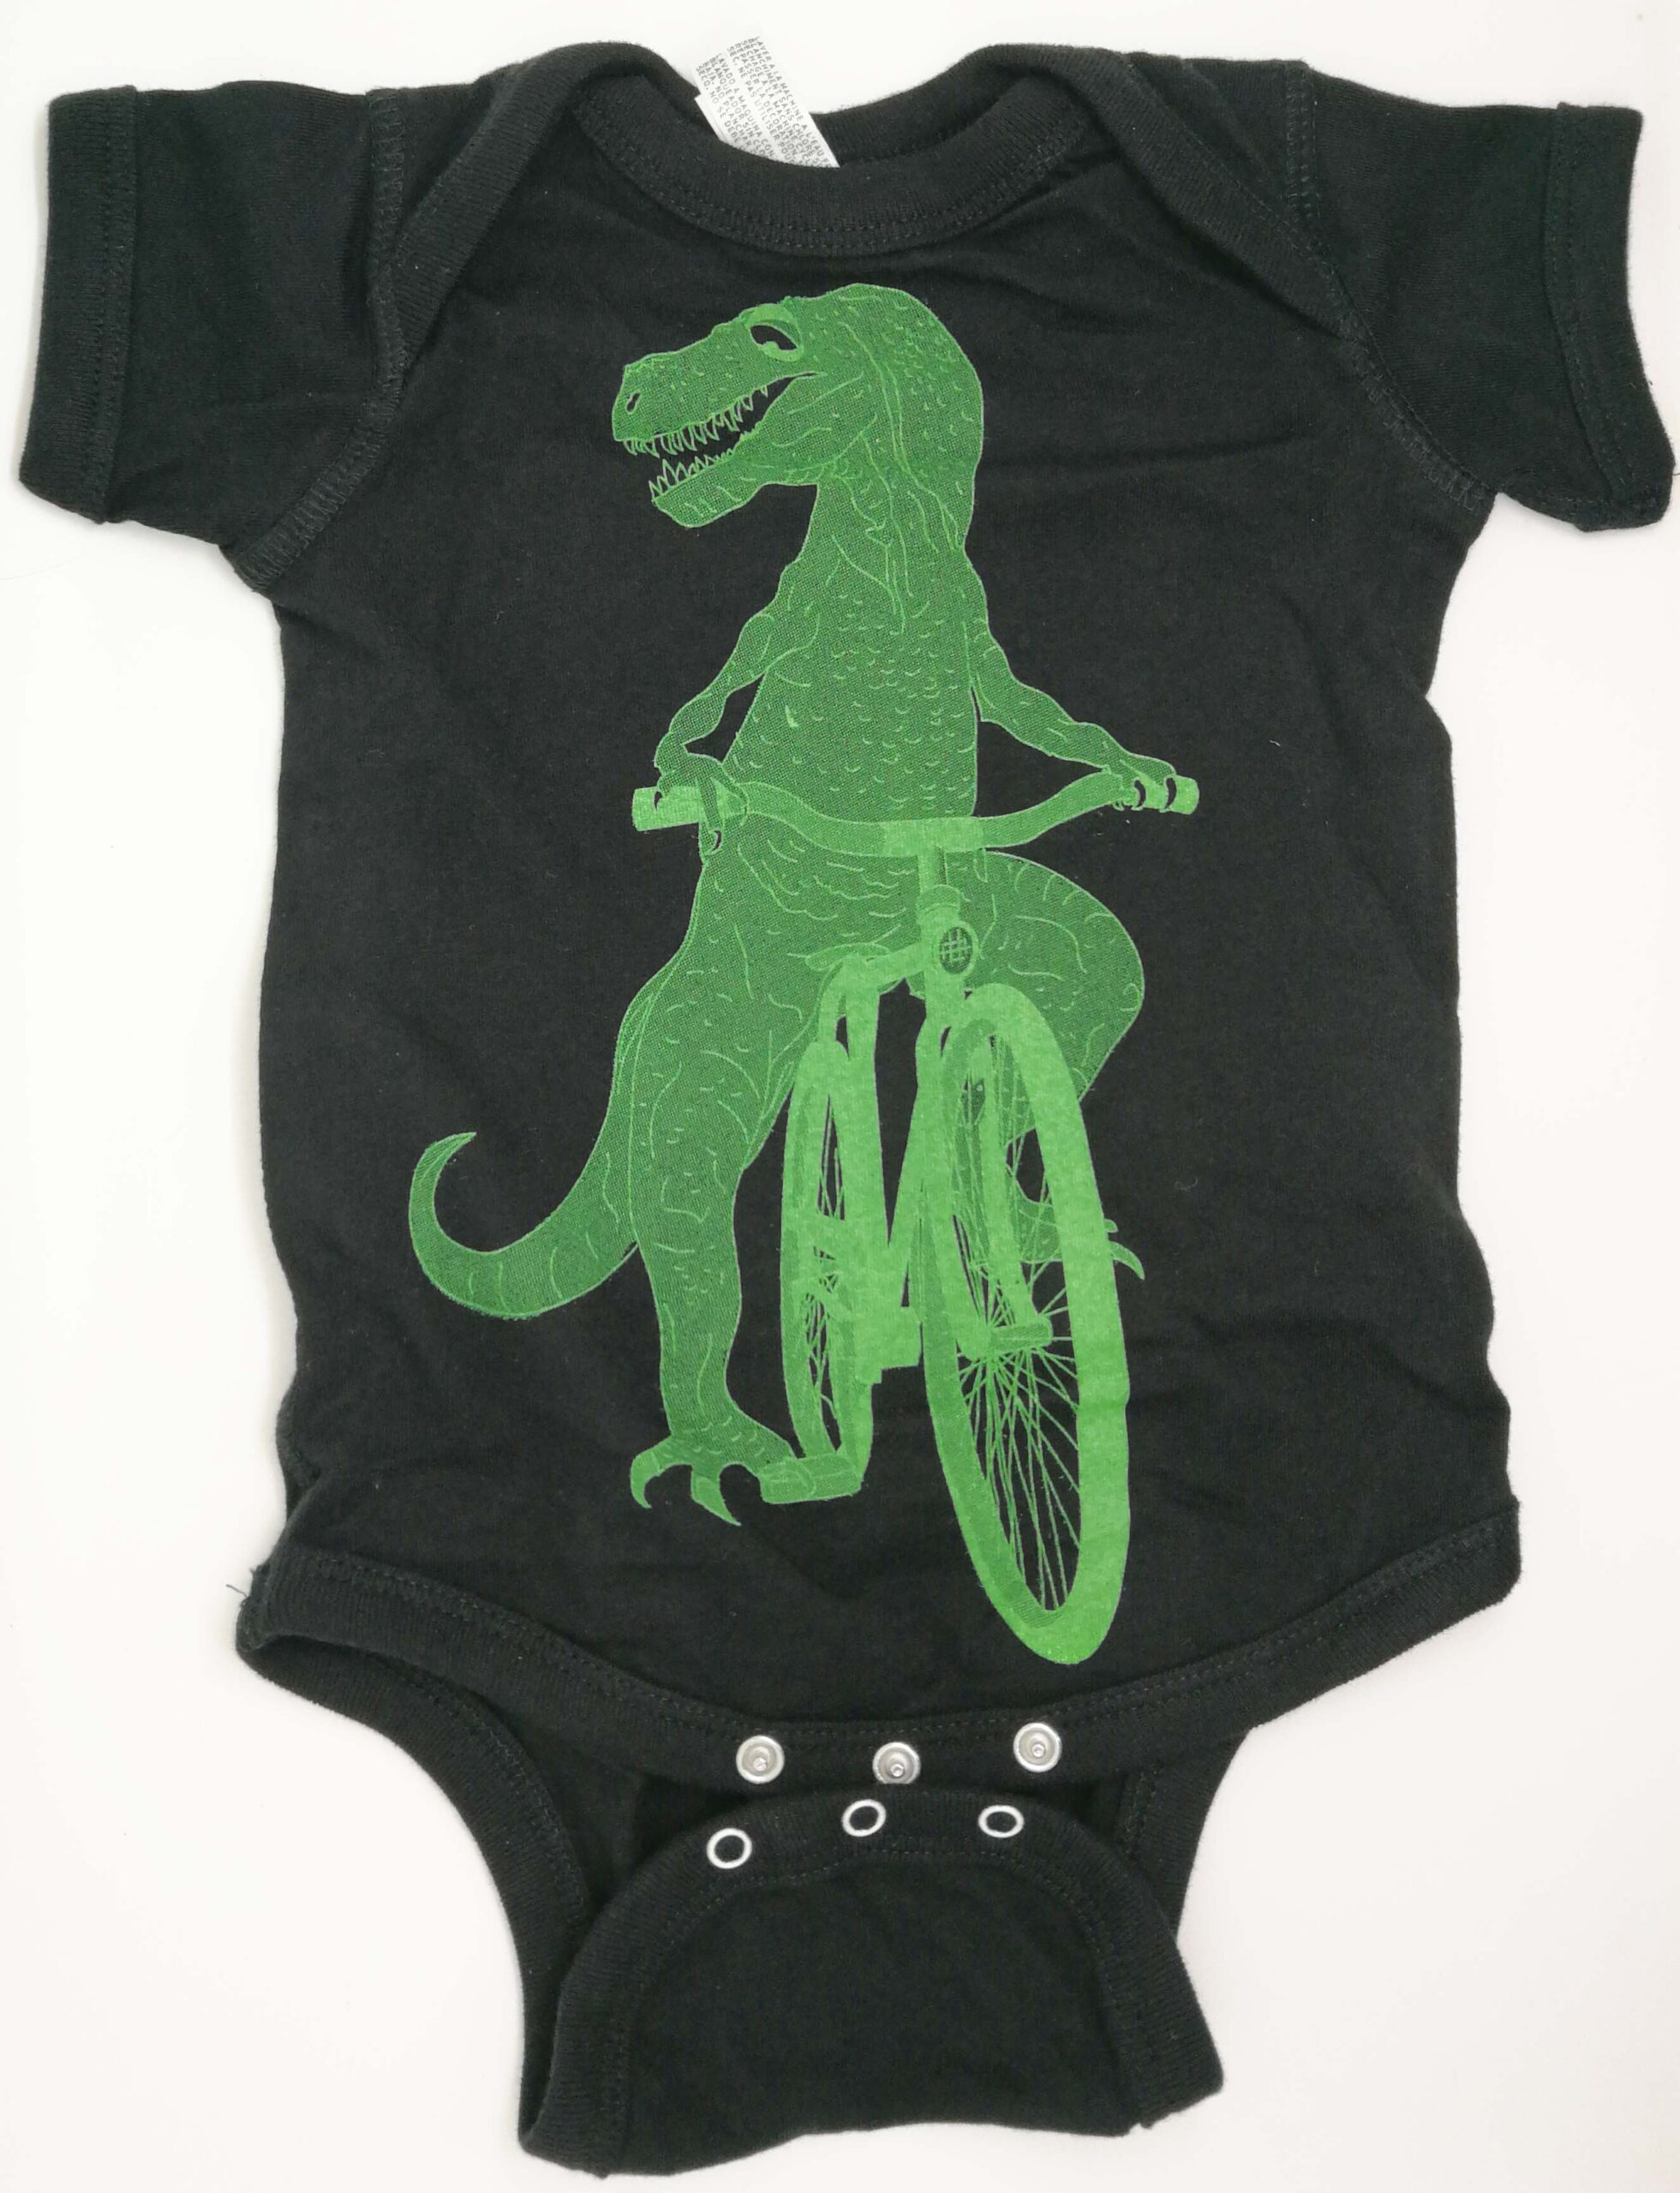 Dinosaur on a bike baby grow